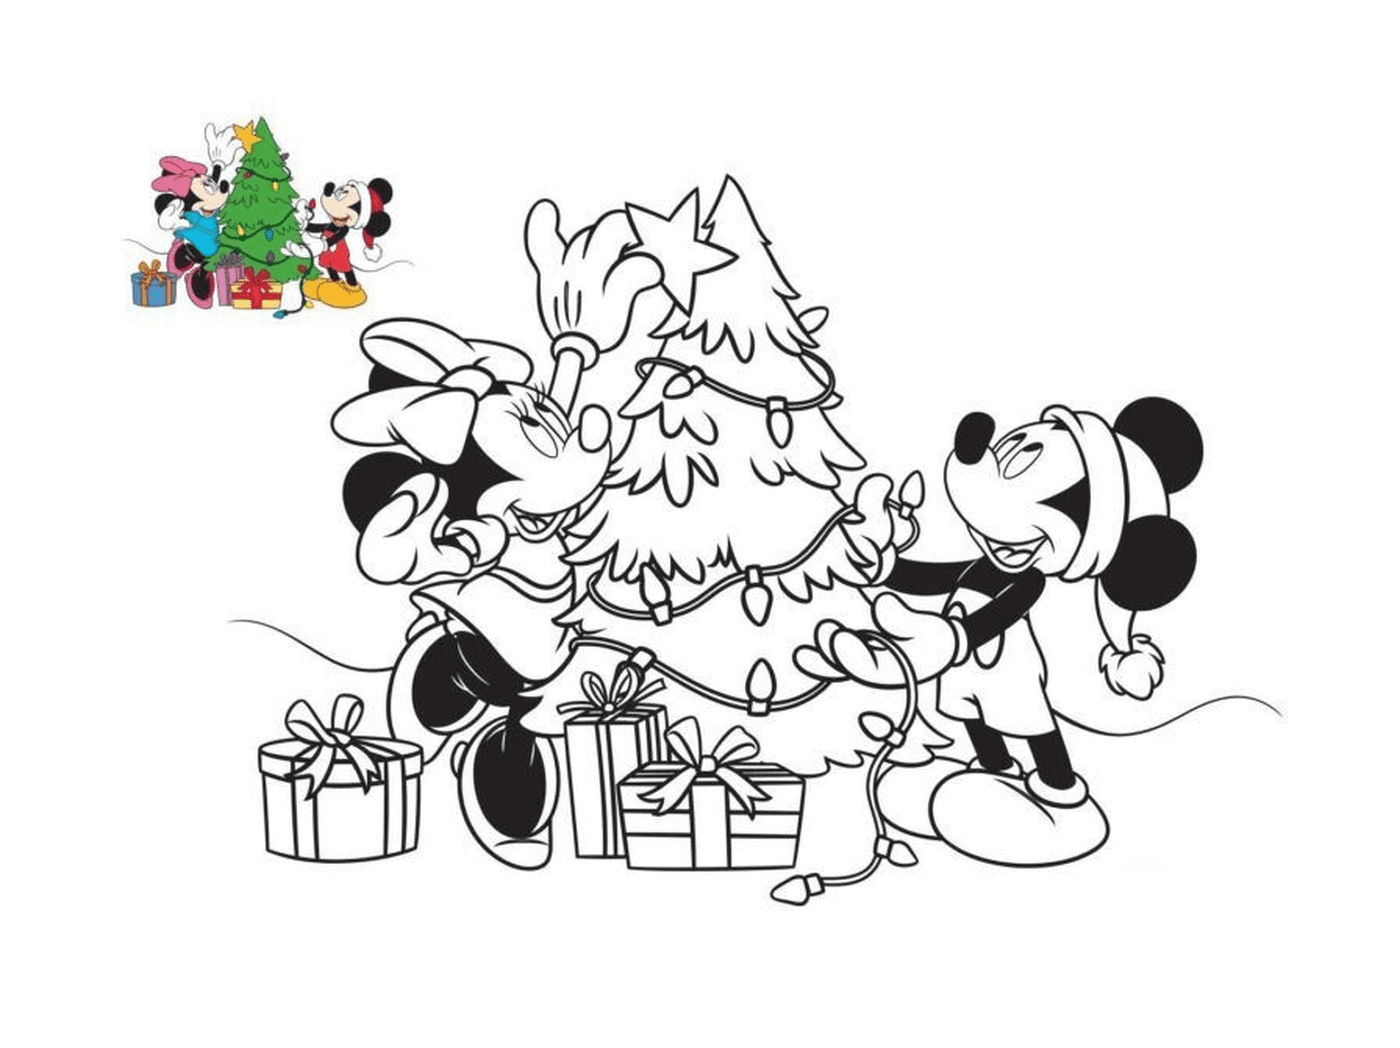  Mickey y Minnie decoran el árbol 